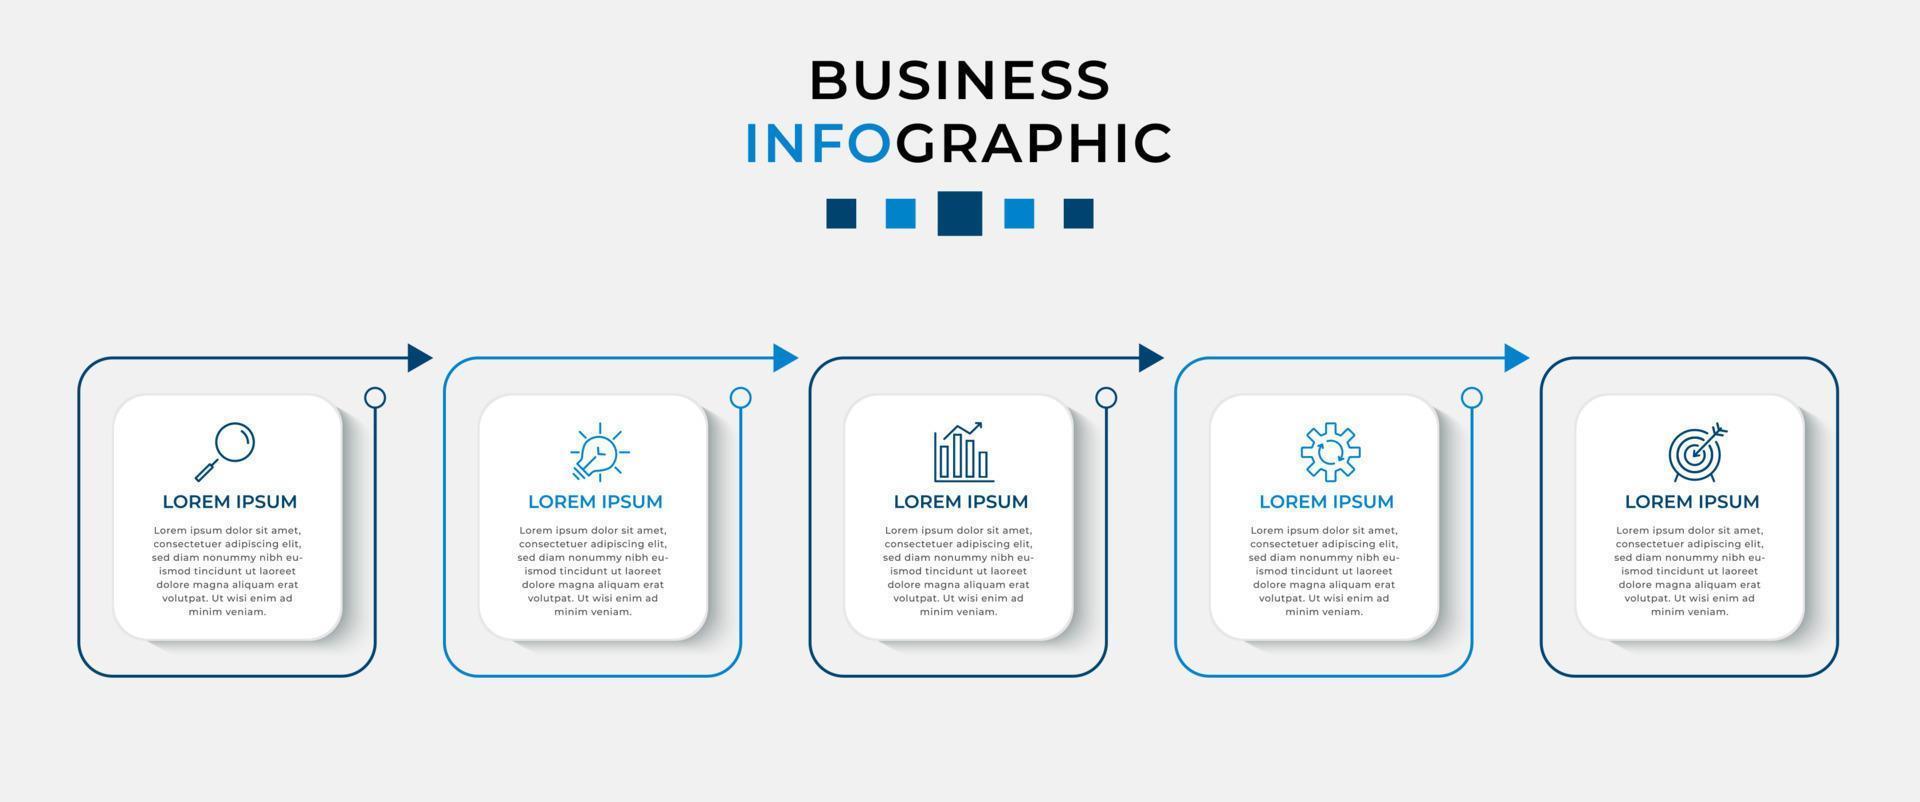 vektor infographic design affärsmall med ikoner och 5 alternativ eller steg. kan användas för processdiagram, presentationer, arbetsflödeslayout, banner, flödesschema, infografik